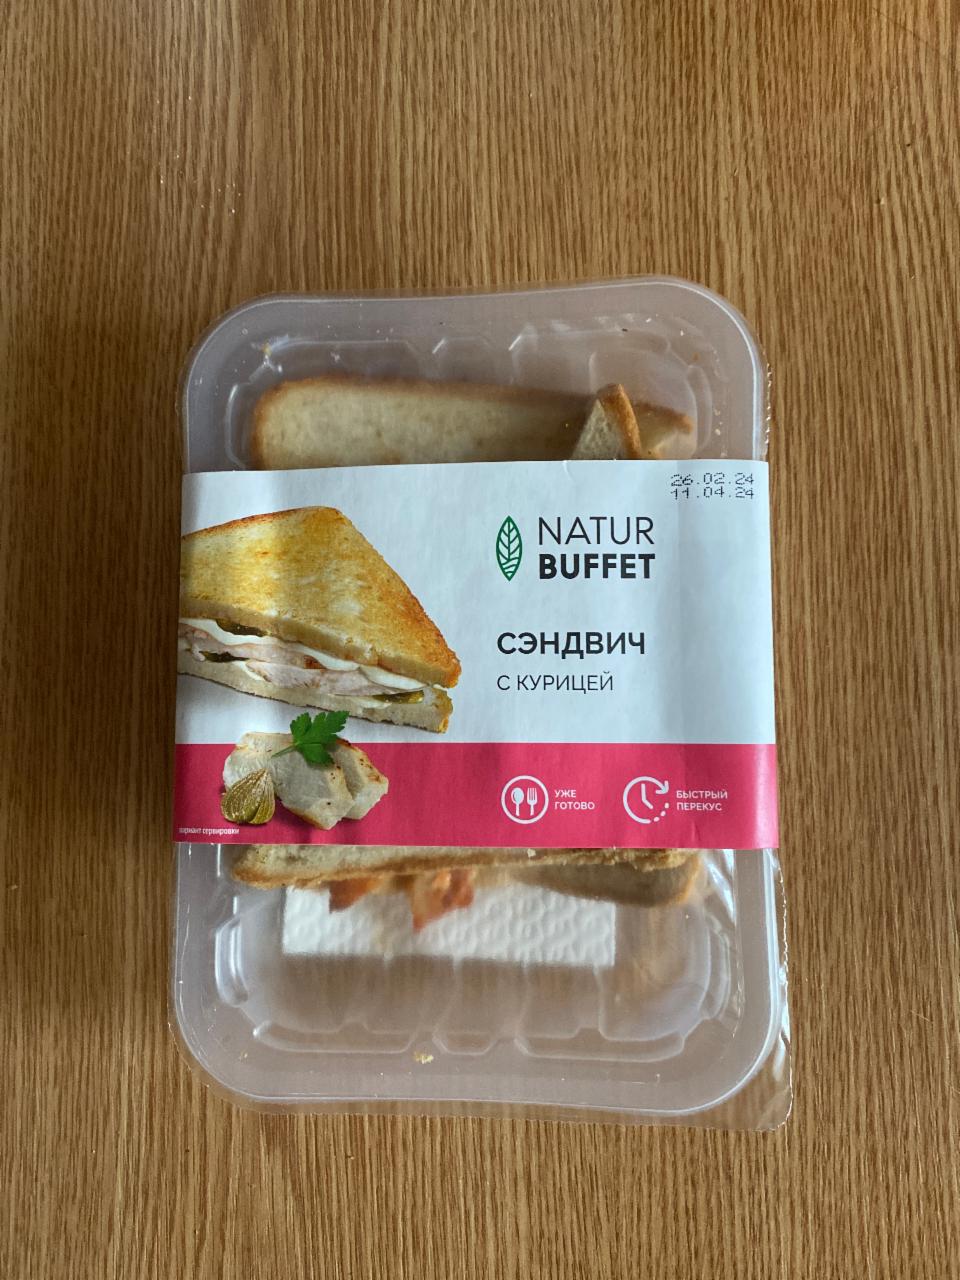 Фото - фитнес сэндвич с курицей NATUR BUFFET